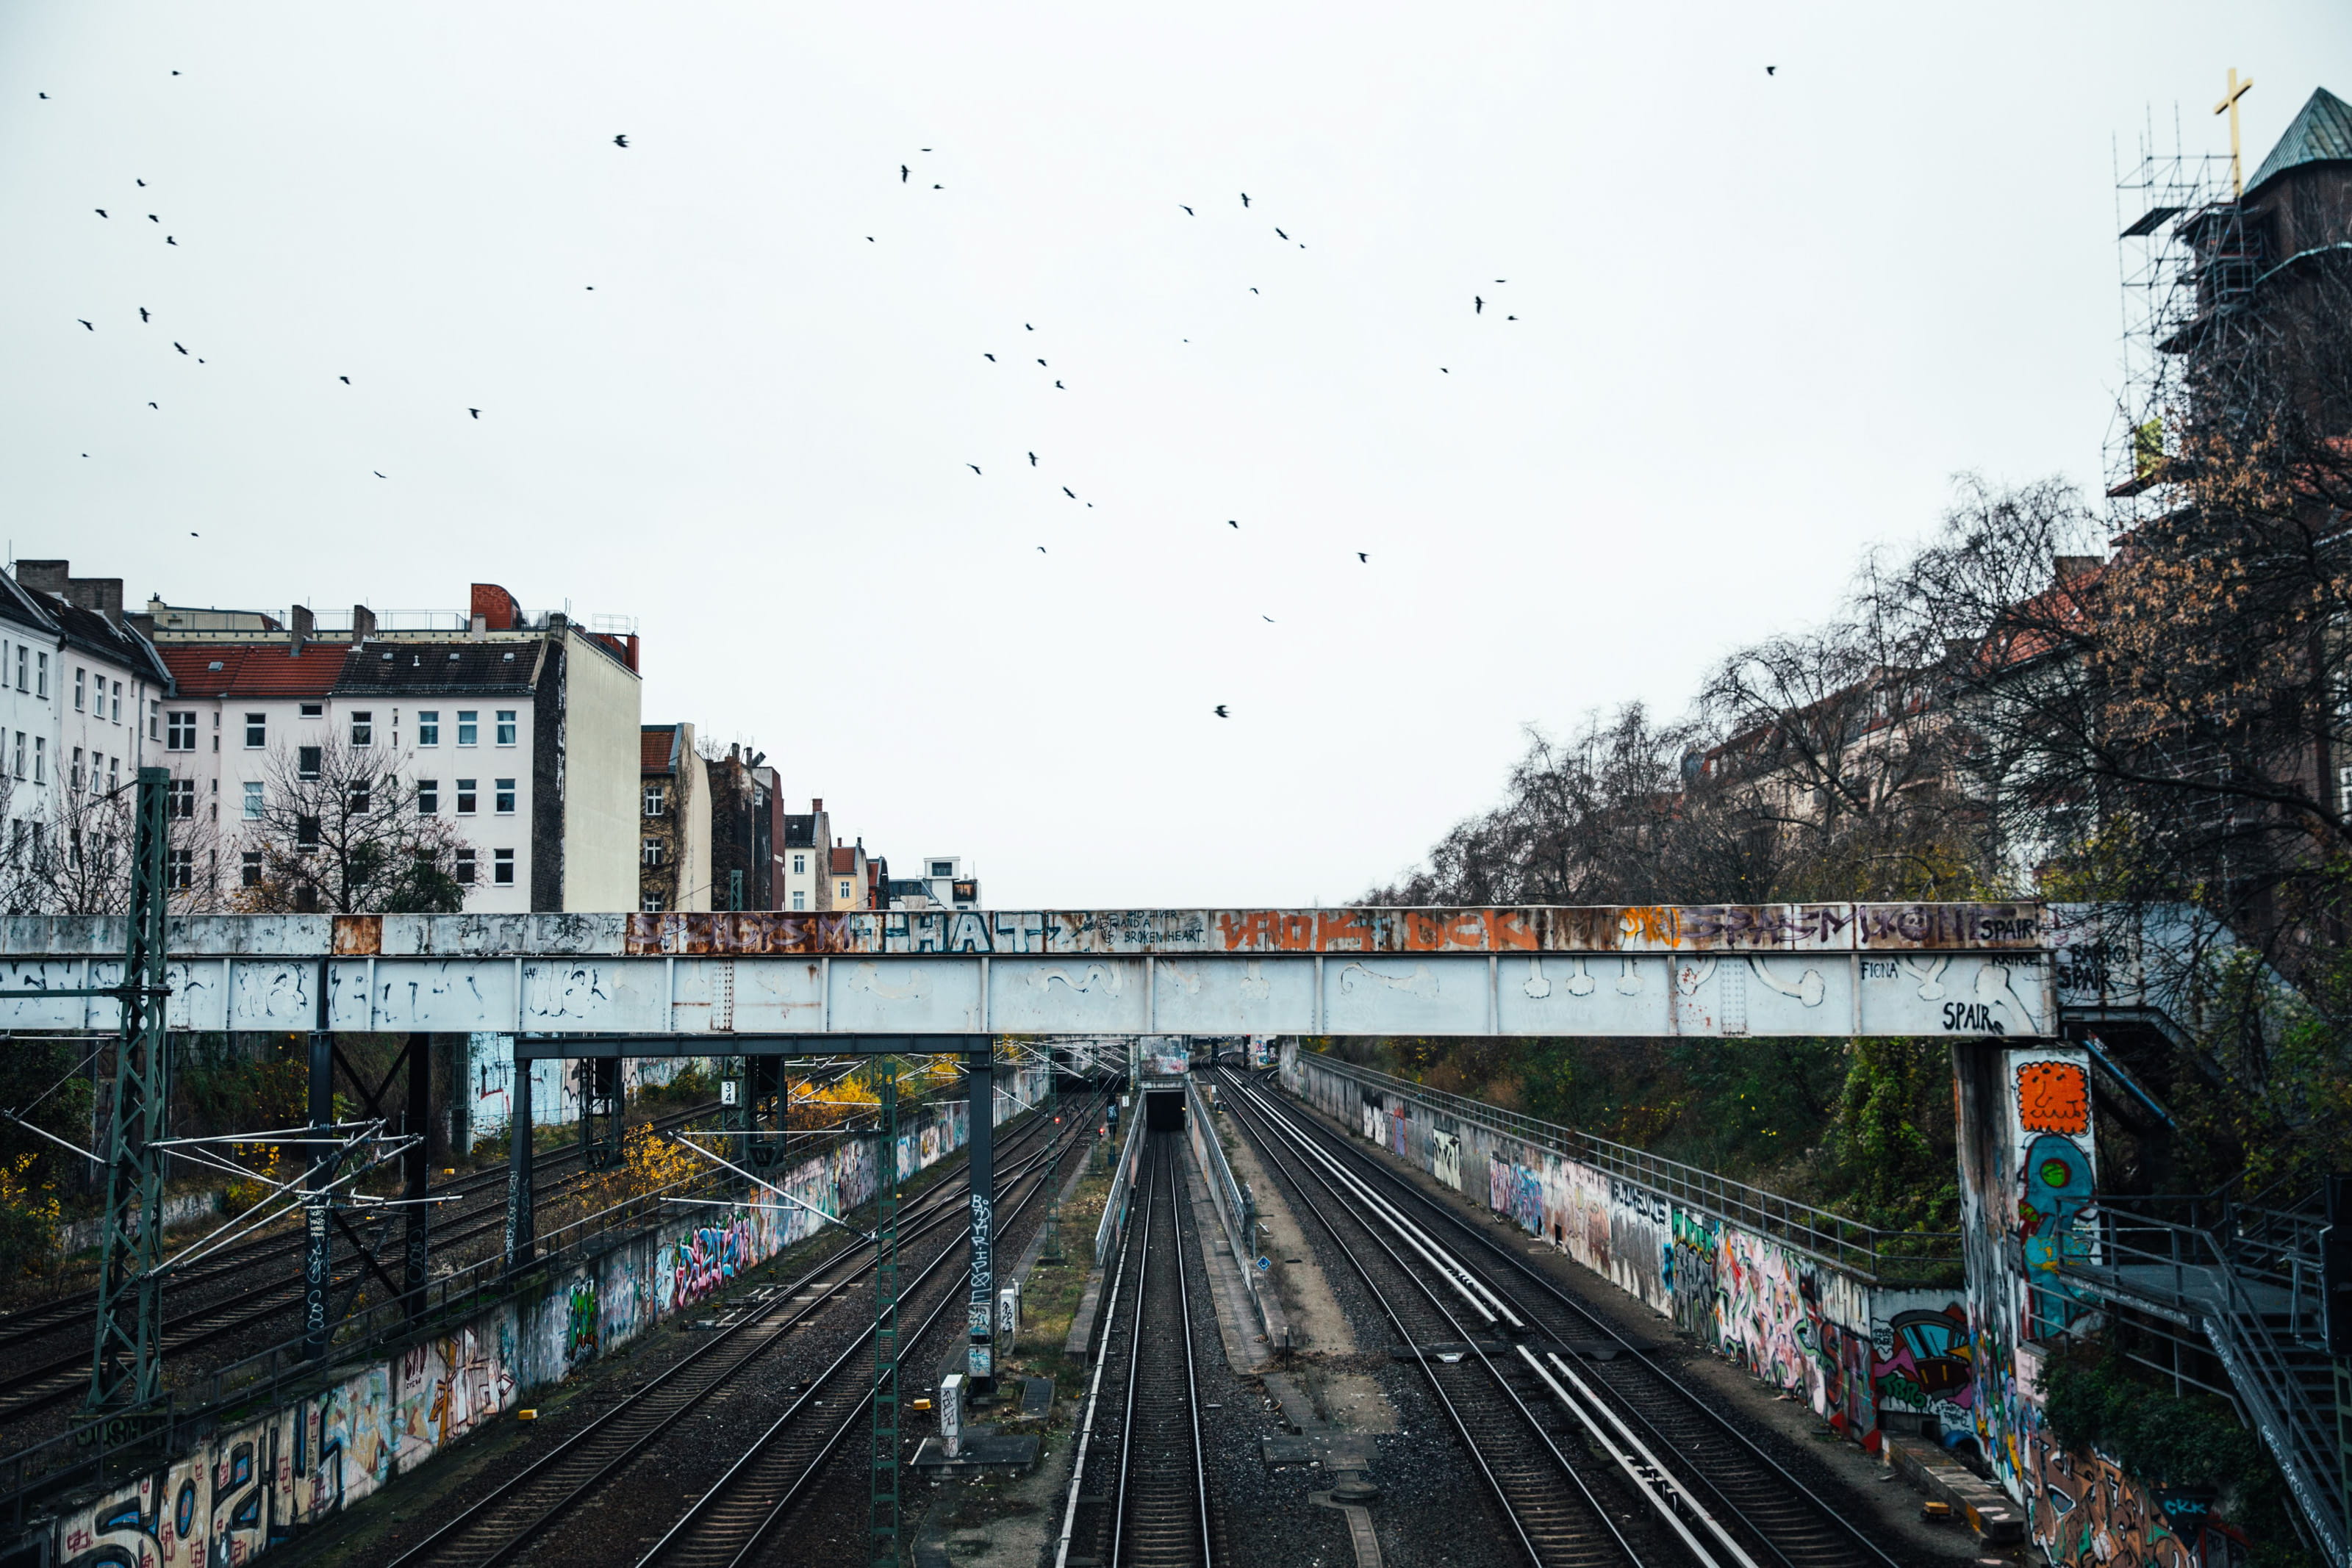 Graffiti walls near a train subway bridge and tracks, architecture